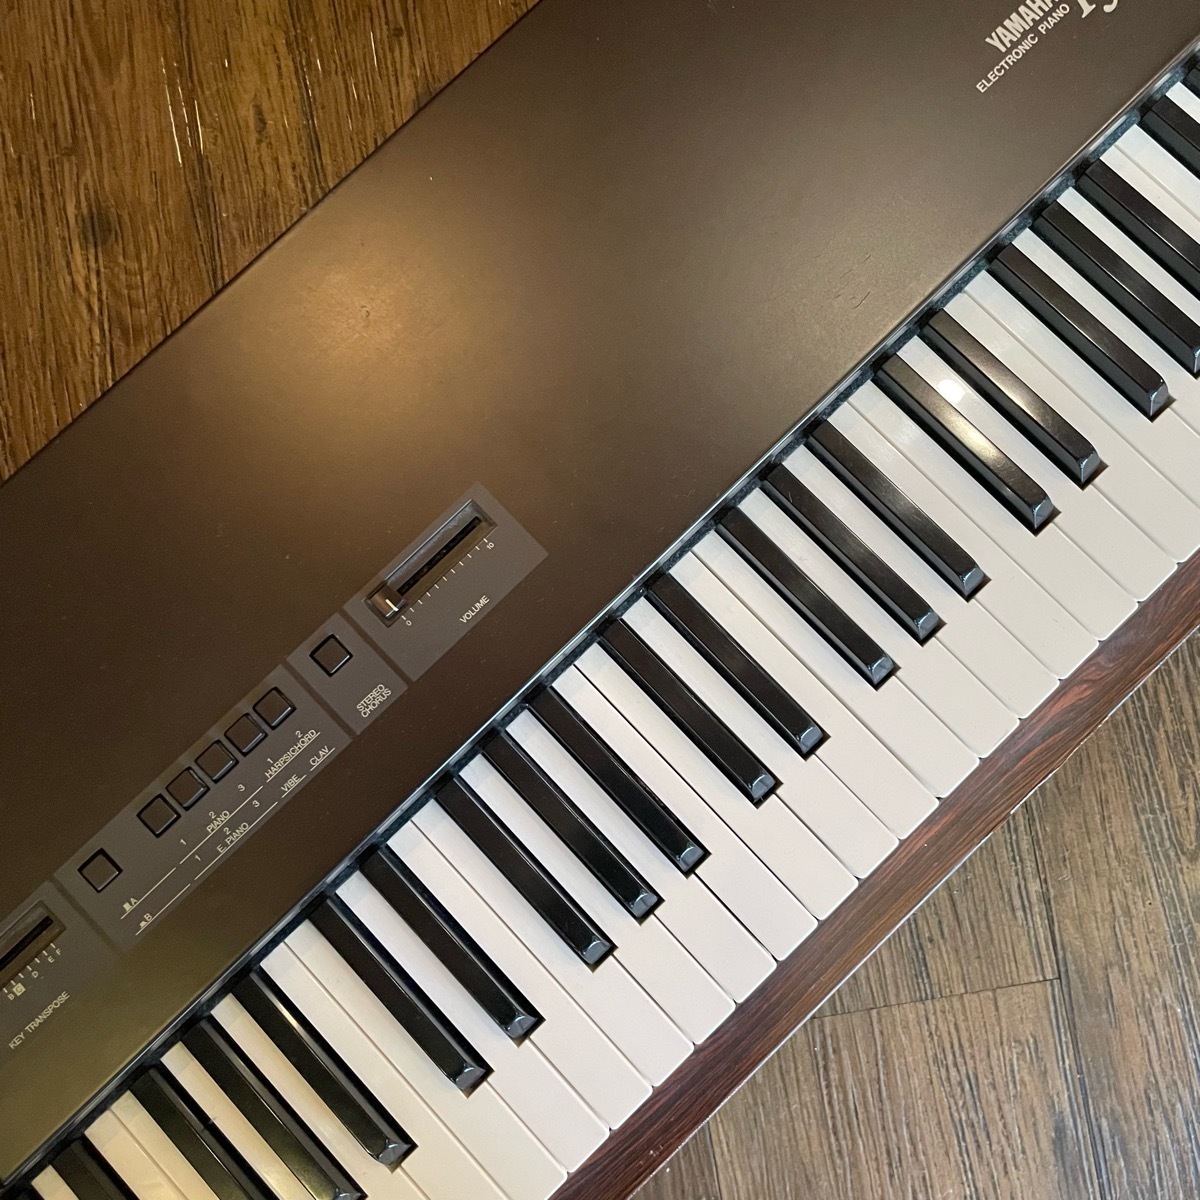 Yamaha PF-12 Stage Piano Keyboard Yamaha клавиатура stage фортепьяно -GrunSound-x904-